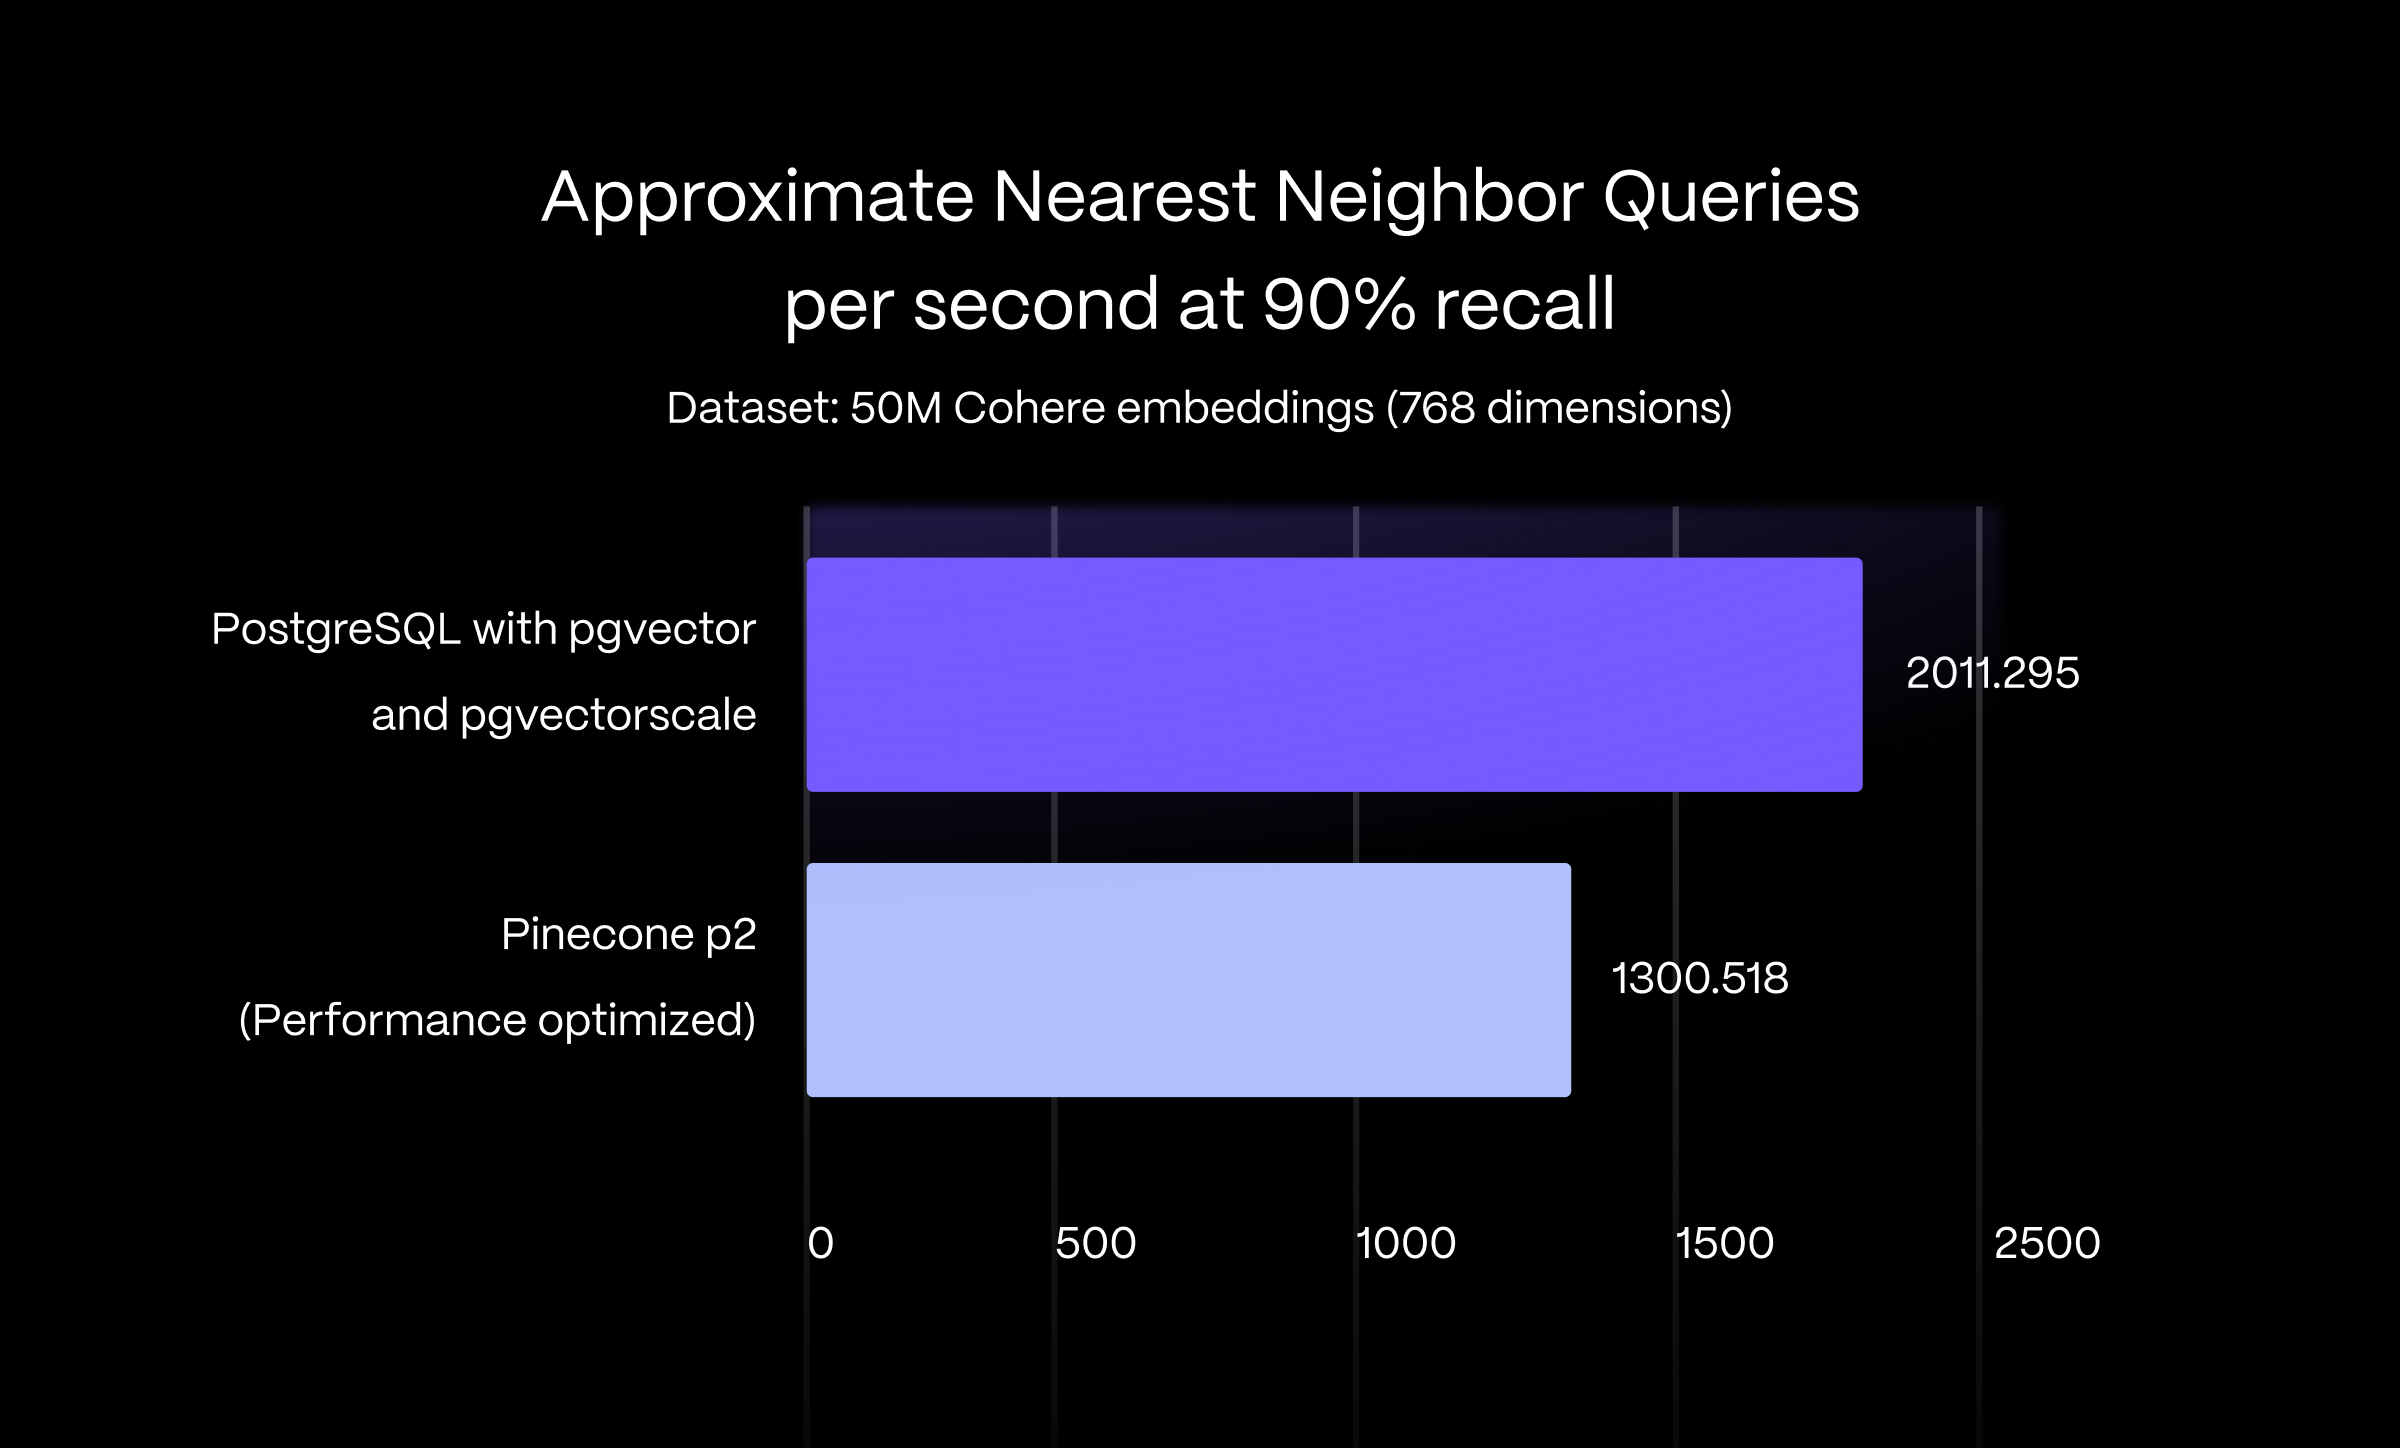 条形图显示 PostgreSQL 在 90% recall 时近似最近邻查询的查询吞吐量（每秒查询数）提高了 1.5 倍。